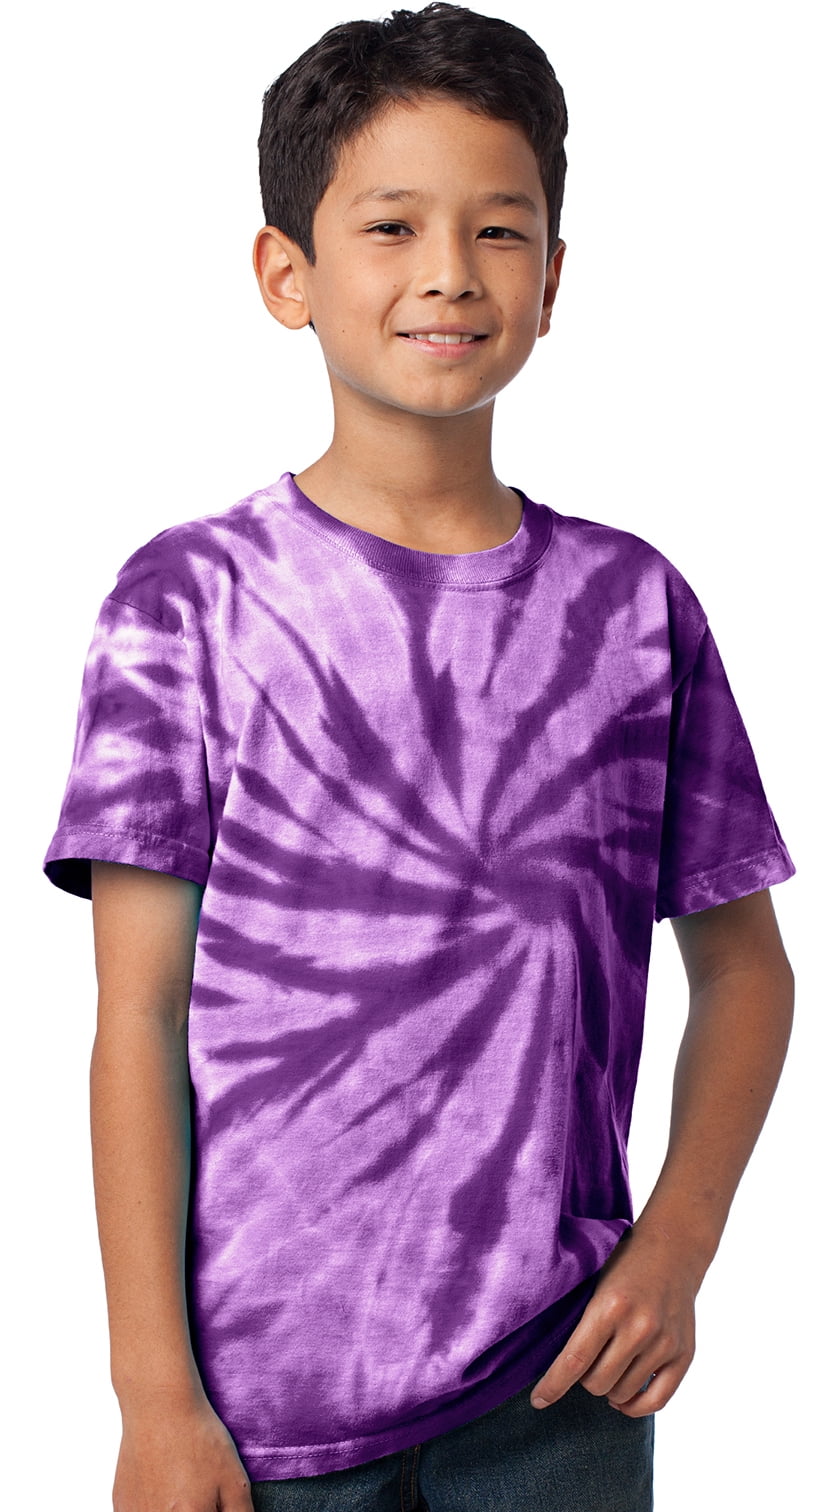 Hippie Kids S M L XL Tie Dye Tee Blue and Purple Girls Tie Dye Tshirt Kids Long Sleeve Tie Dye Shirt